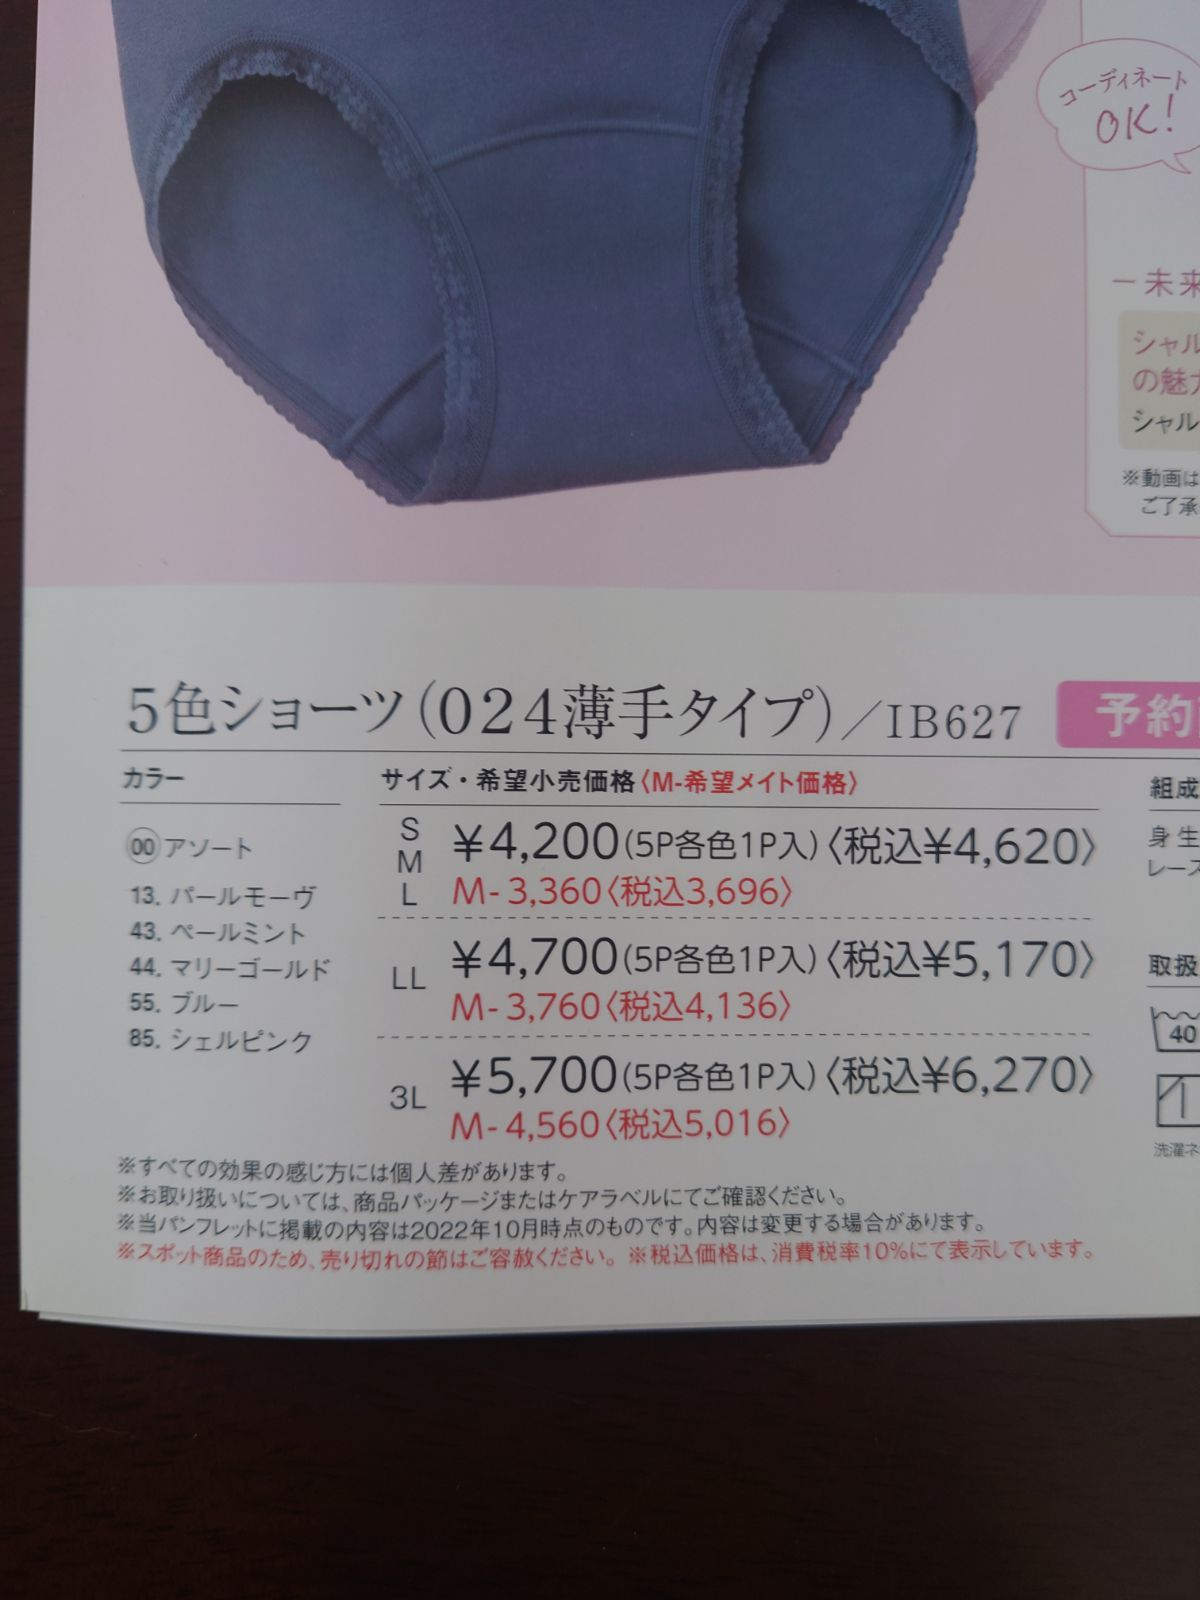 シャルレ5色ショーツ(053タイプ小ぶり)3Lｻｲｽﾞ新製品未開封 - メルカリ